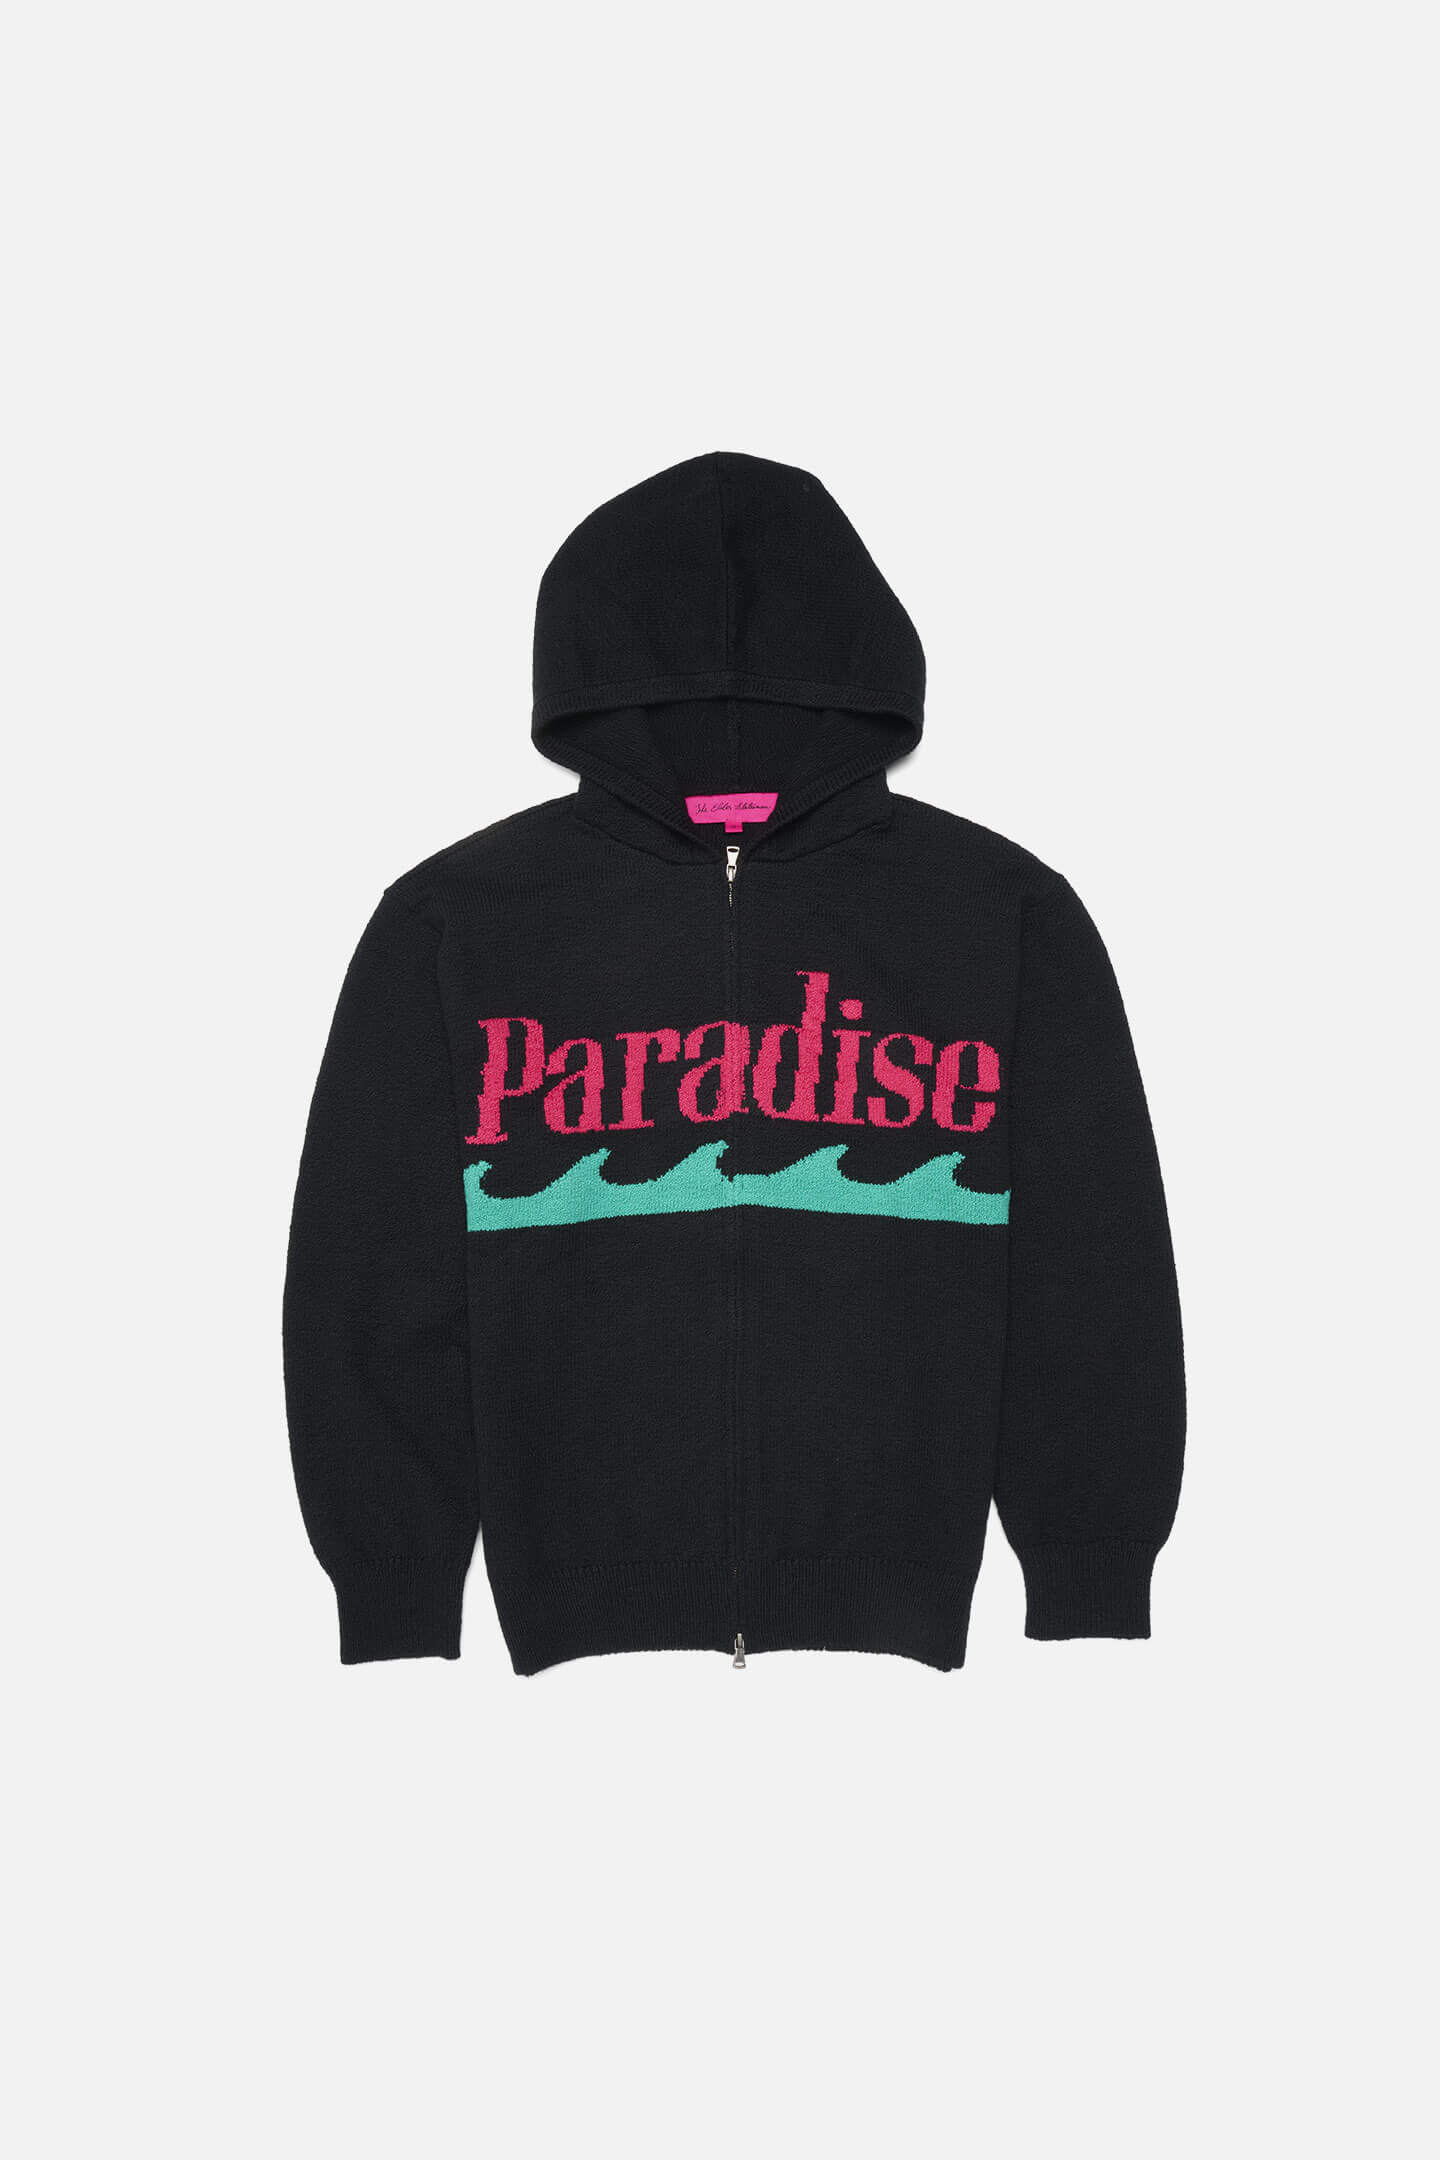 Paradise Hoodie | ONYX BLACK